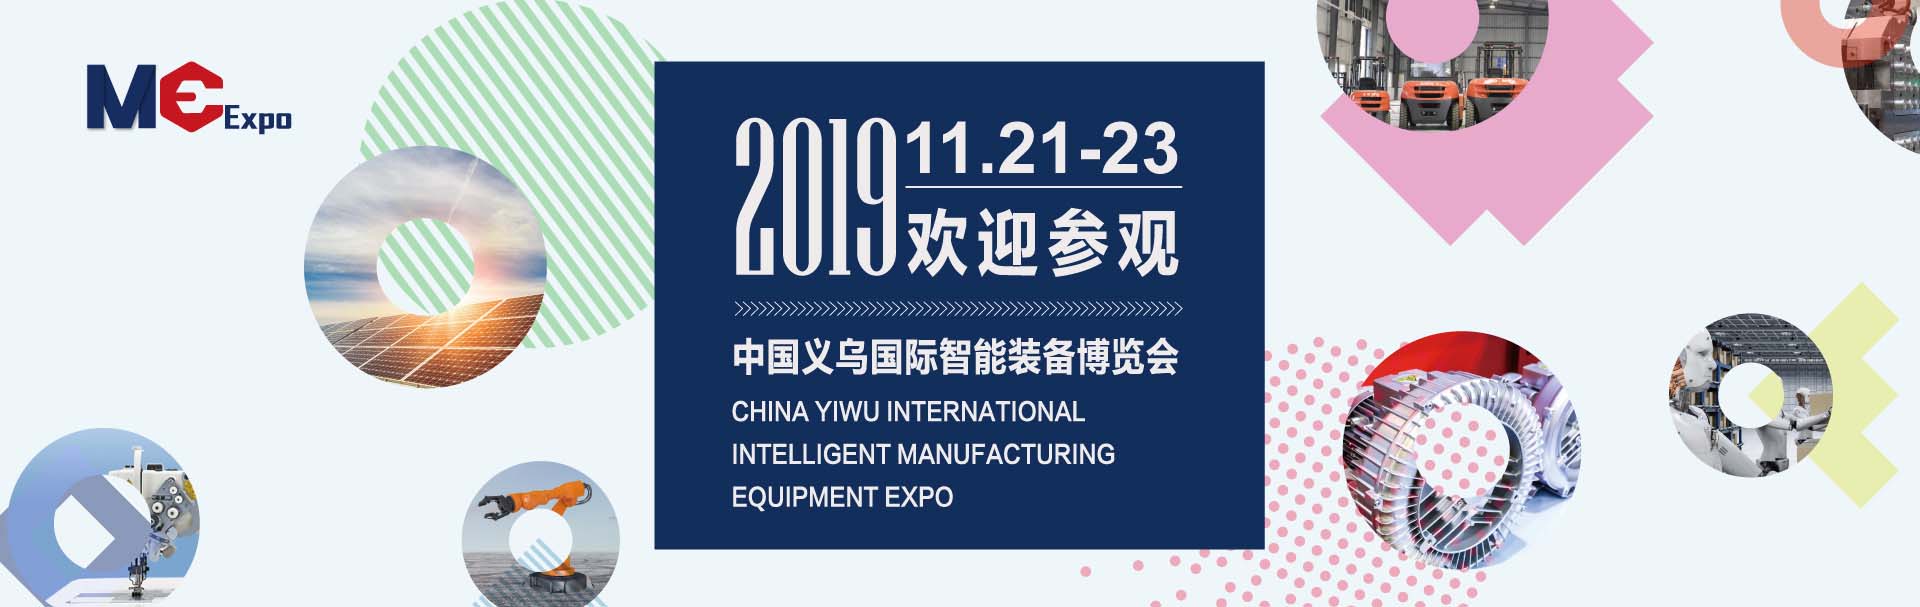 唐山凯硕科技与您相约“中国义乌国际智能装备博览会”